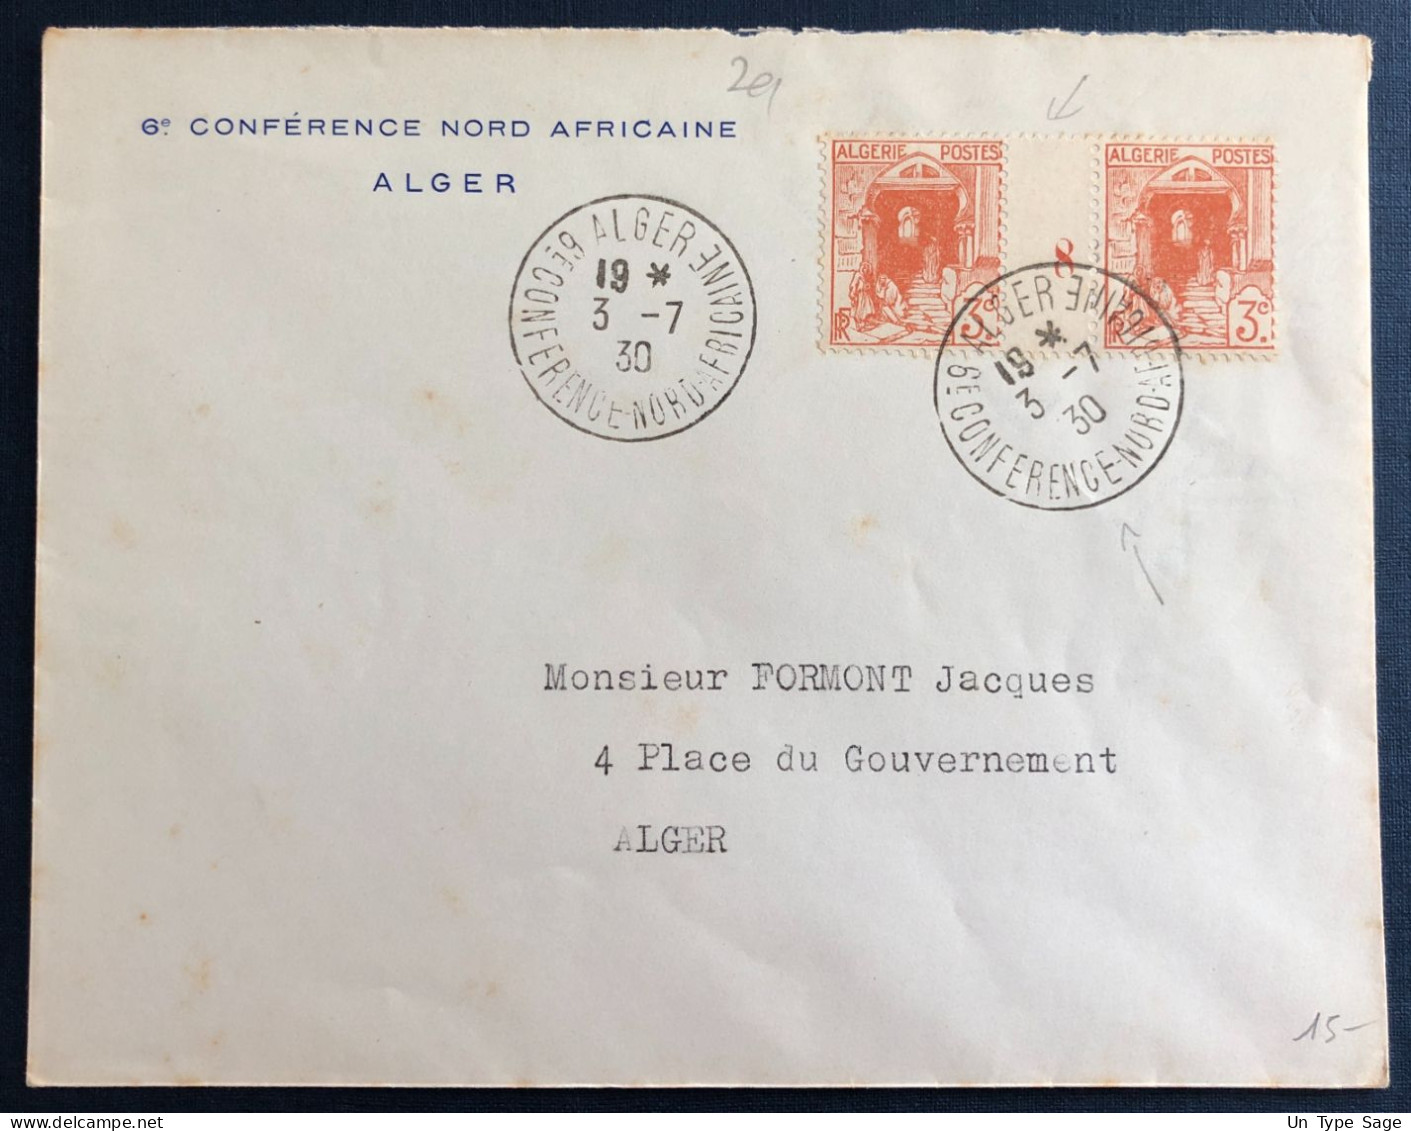 Algérie, Divers (millésime) Sur Enveloppe TAD Alger, 6e Conférence Nord Africaine 3.7.1930 - (B3359) - Lettres & Documents